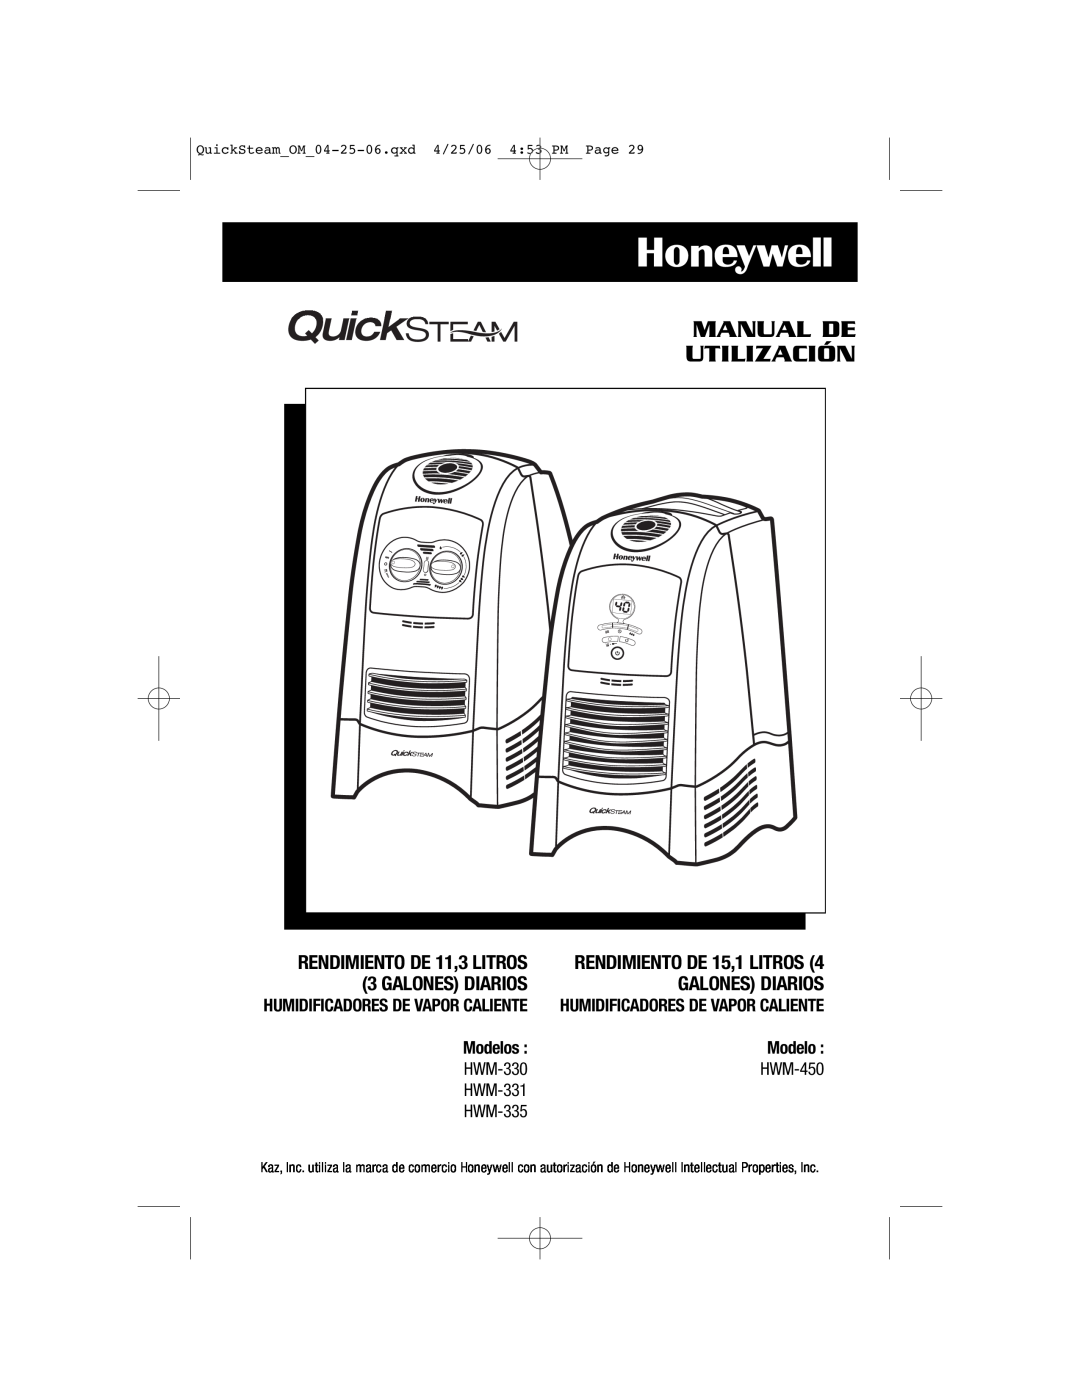 Honeywell HWM-335 Manual De Utilización, Galones Diarios, RENDIMIENTO DE 11,3 LITROS, Modelos, HWM-330, HWM-450, HWM-331 